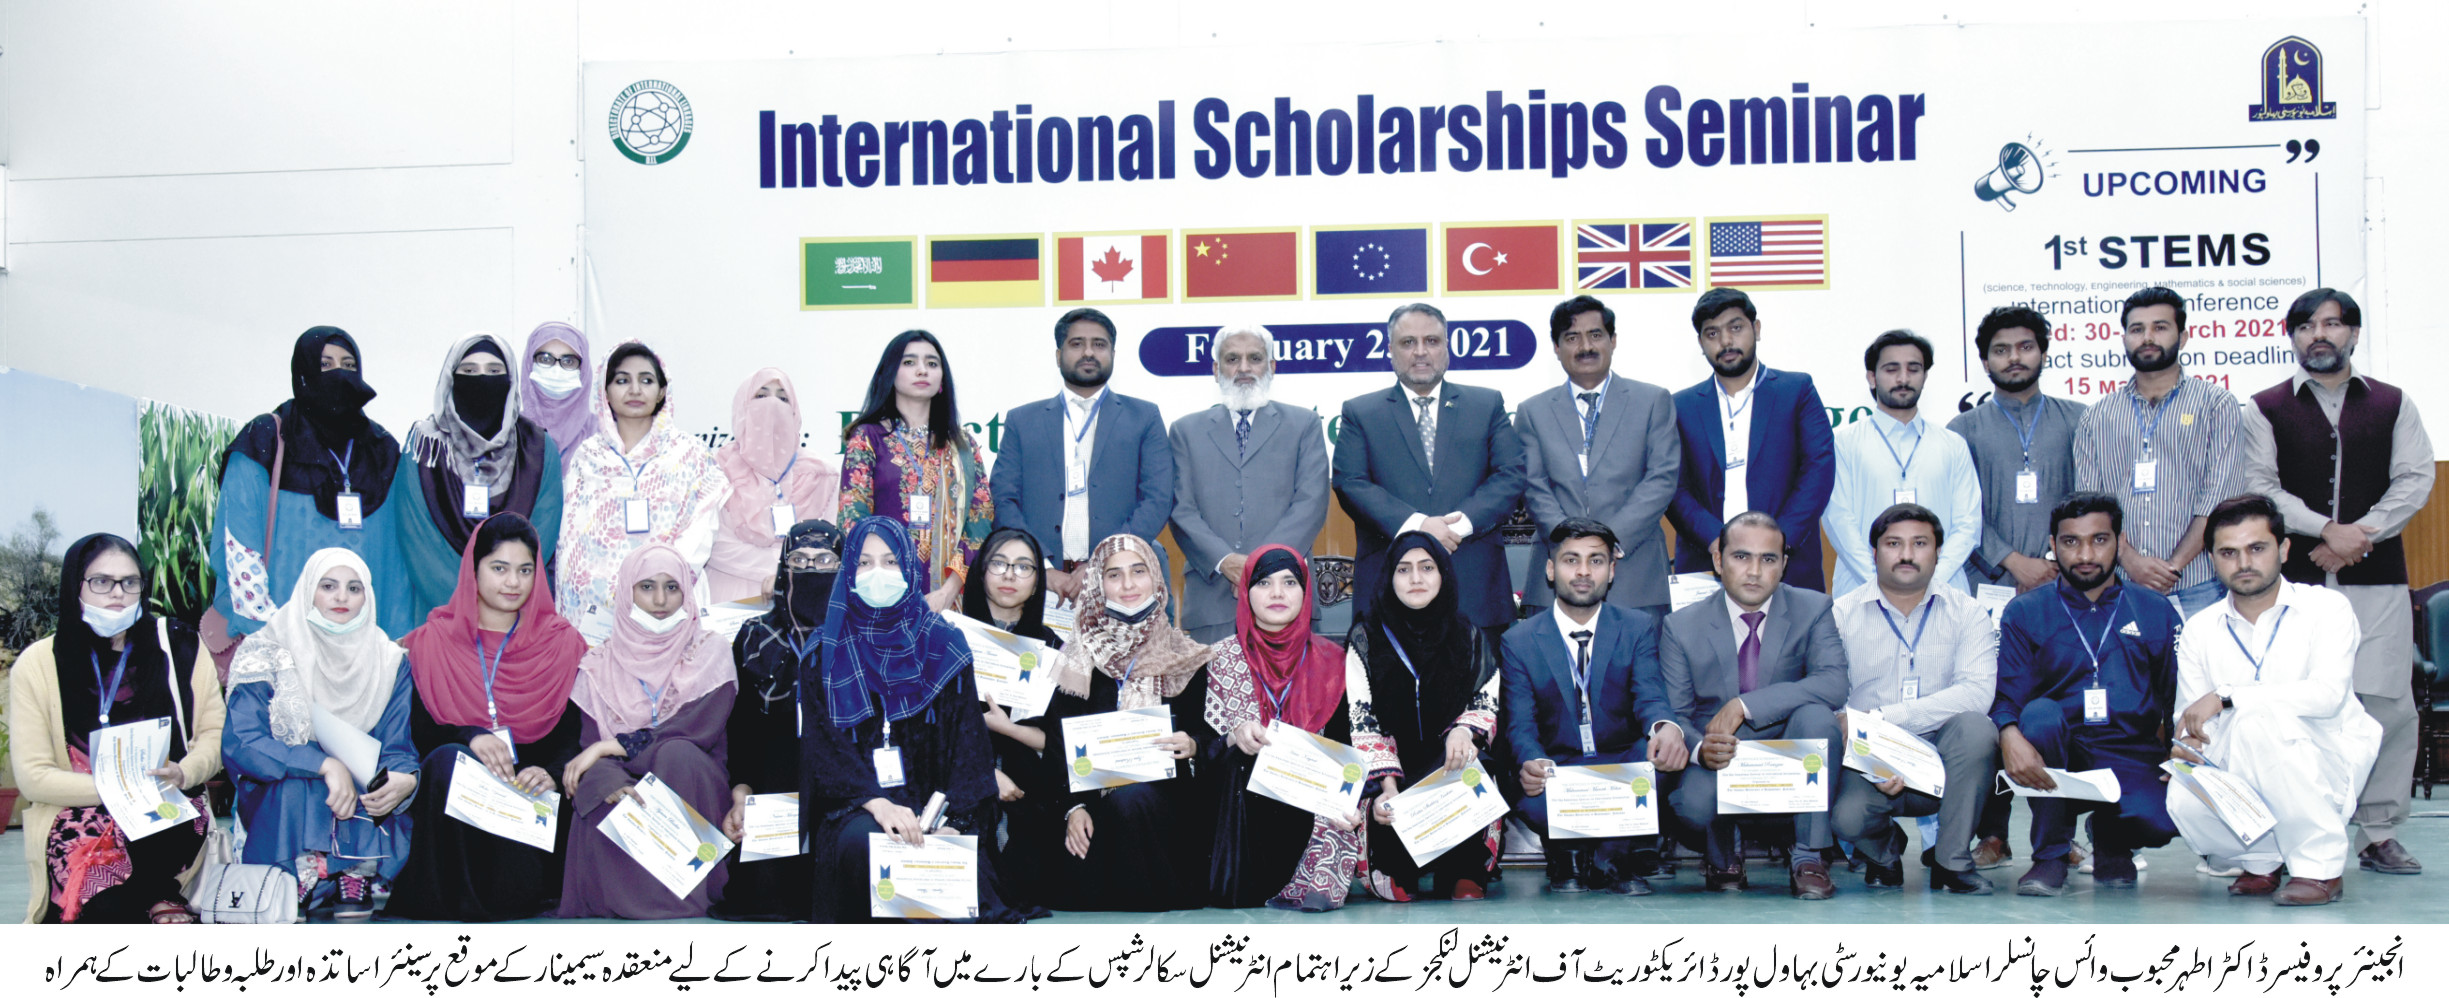 International Scholarhips Seminar 2